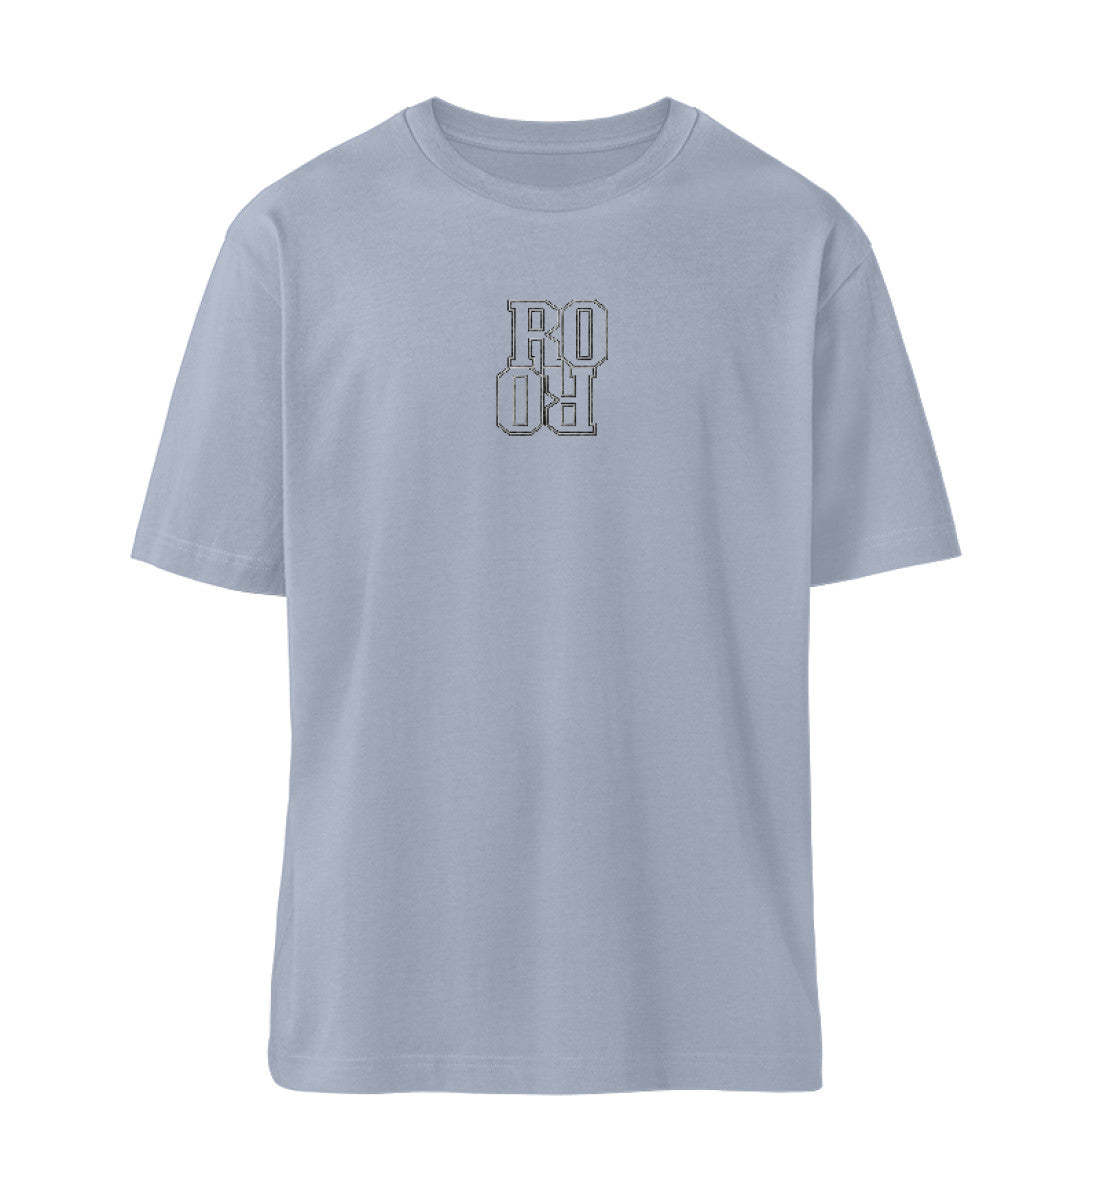 Serene Blue farbiges T-Shirt Unisex Relaxed Fit für Frauen und Männer bestickt mit dem Design der Roger Rockawoo Brand Kollektion